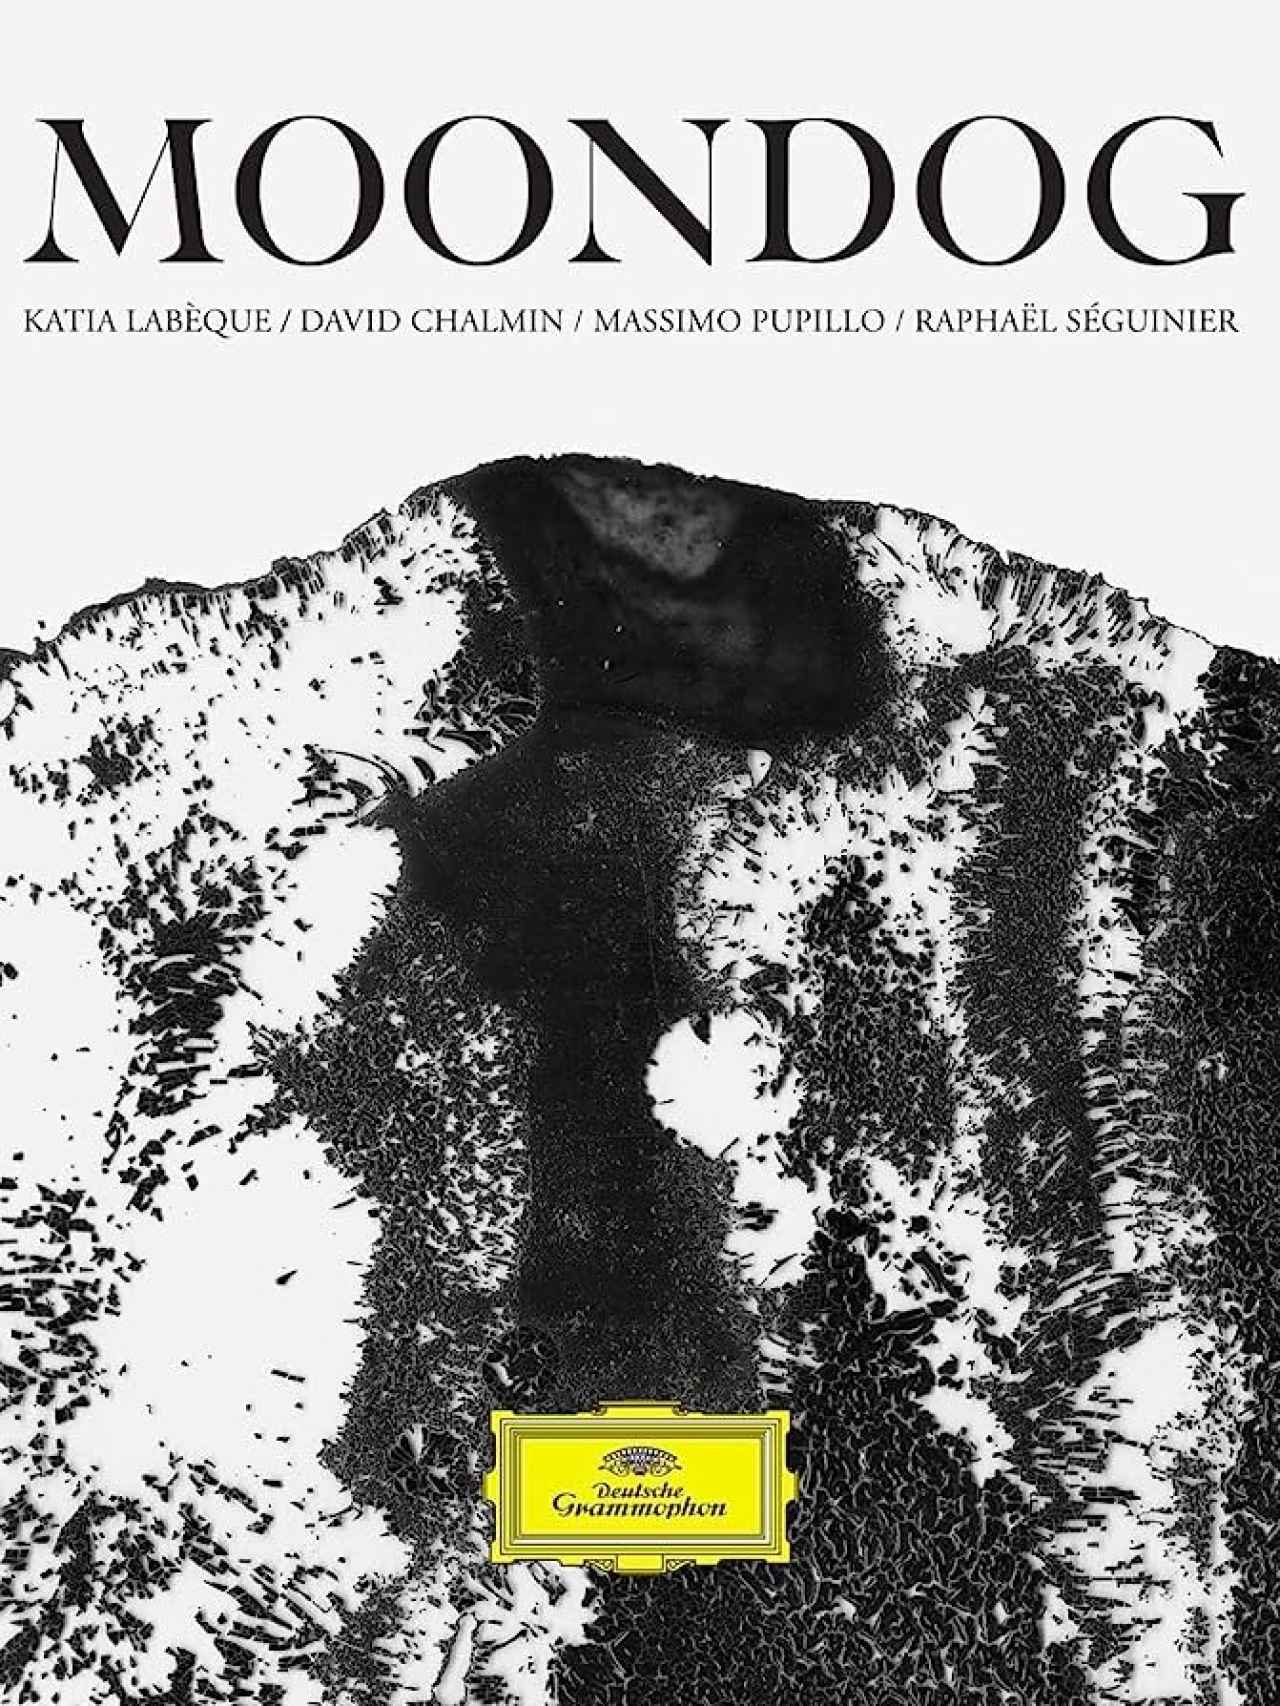 Un disco de Moondog para el sello Deutsche Grammophon